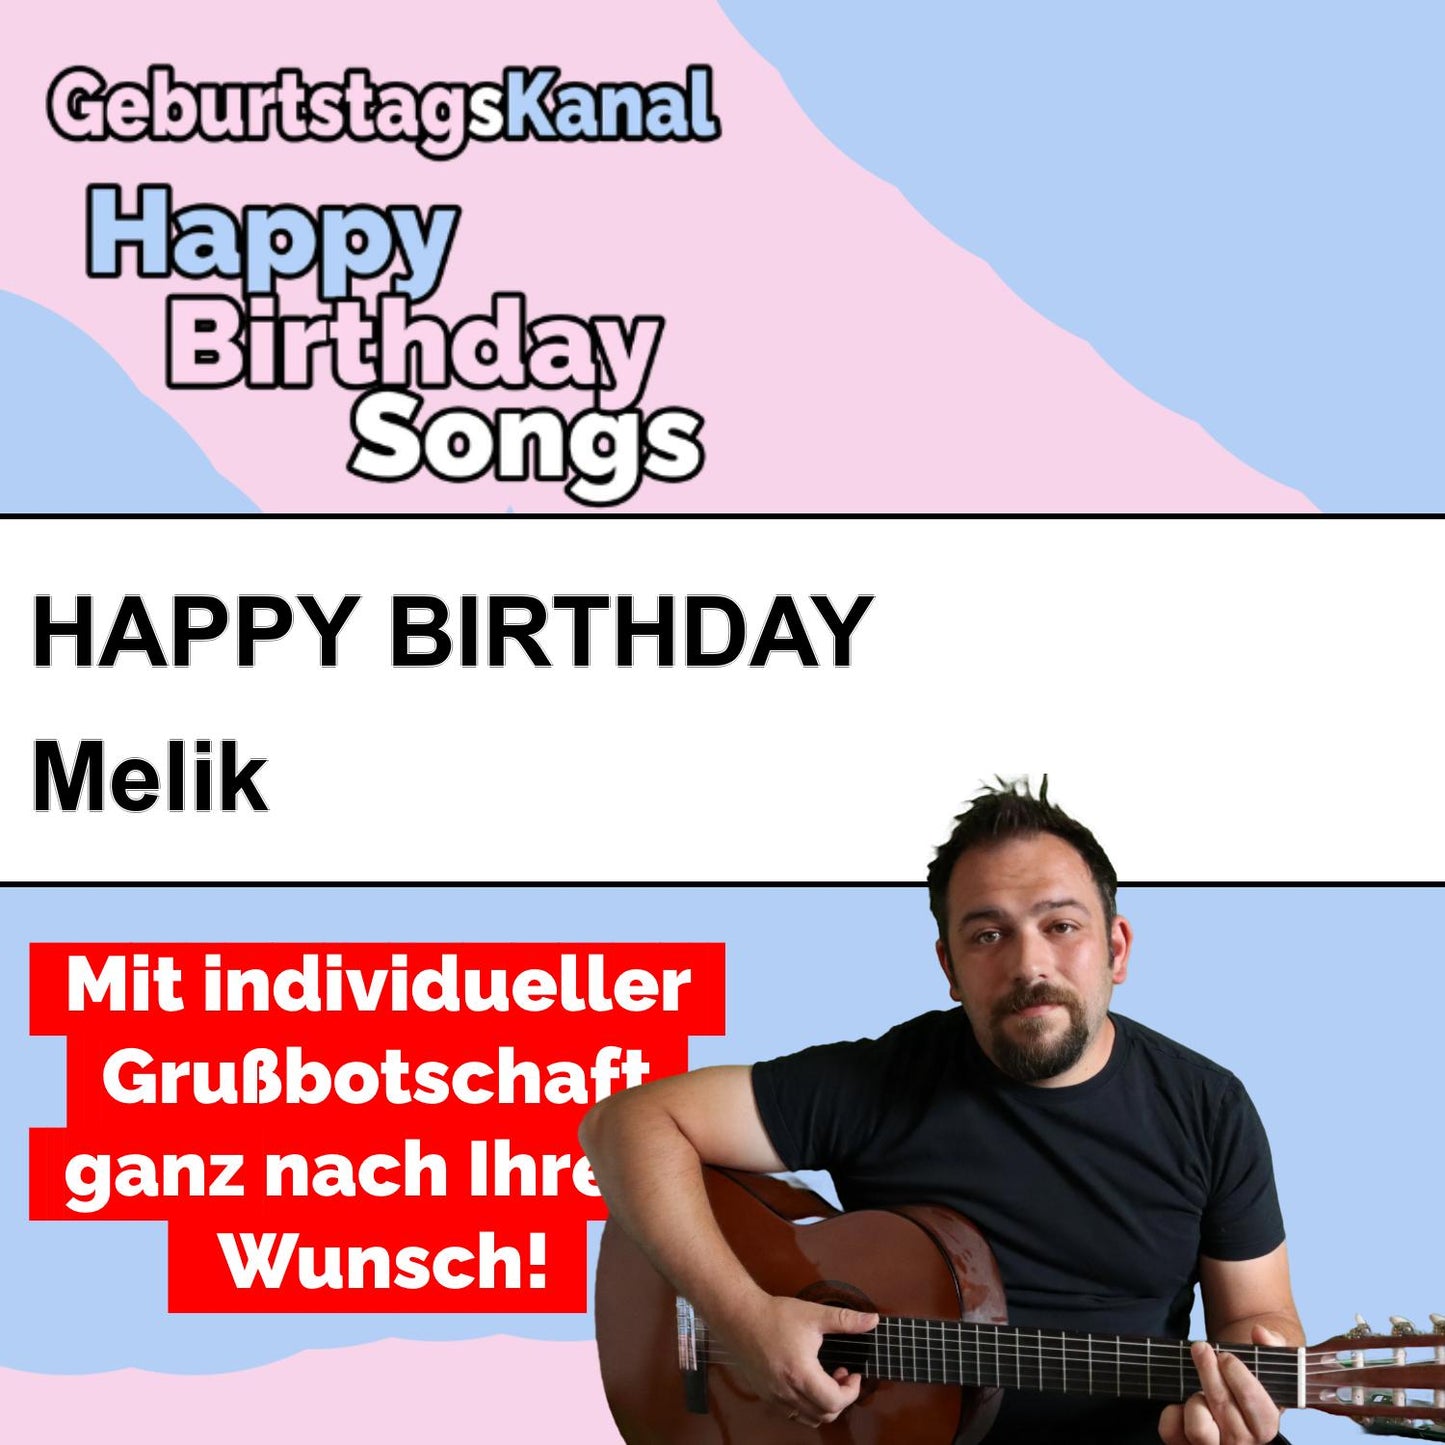 Produktbild Happy Birthday to you Melik mit Wunschgrußbotschaft